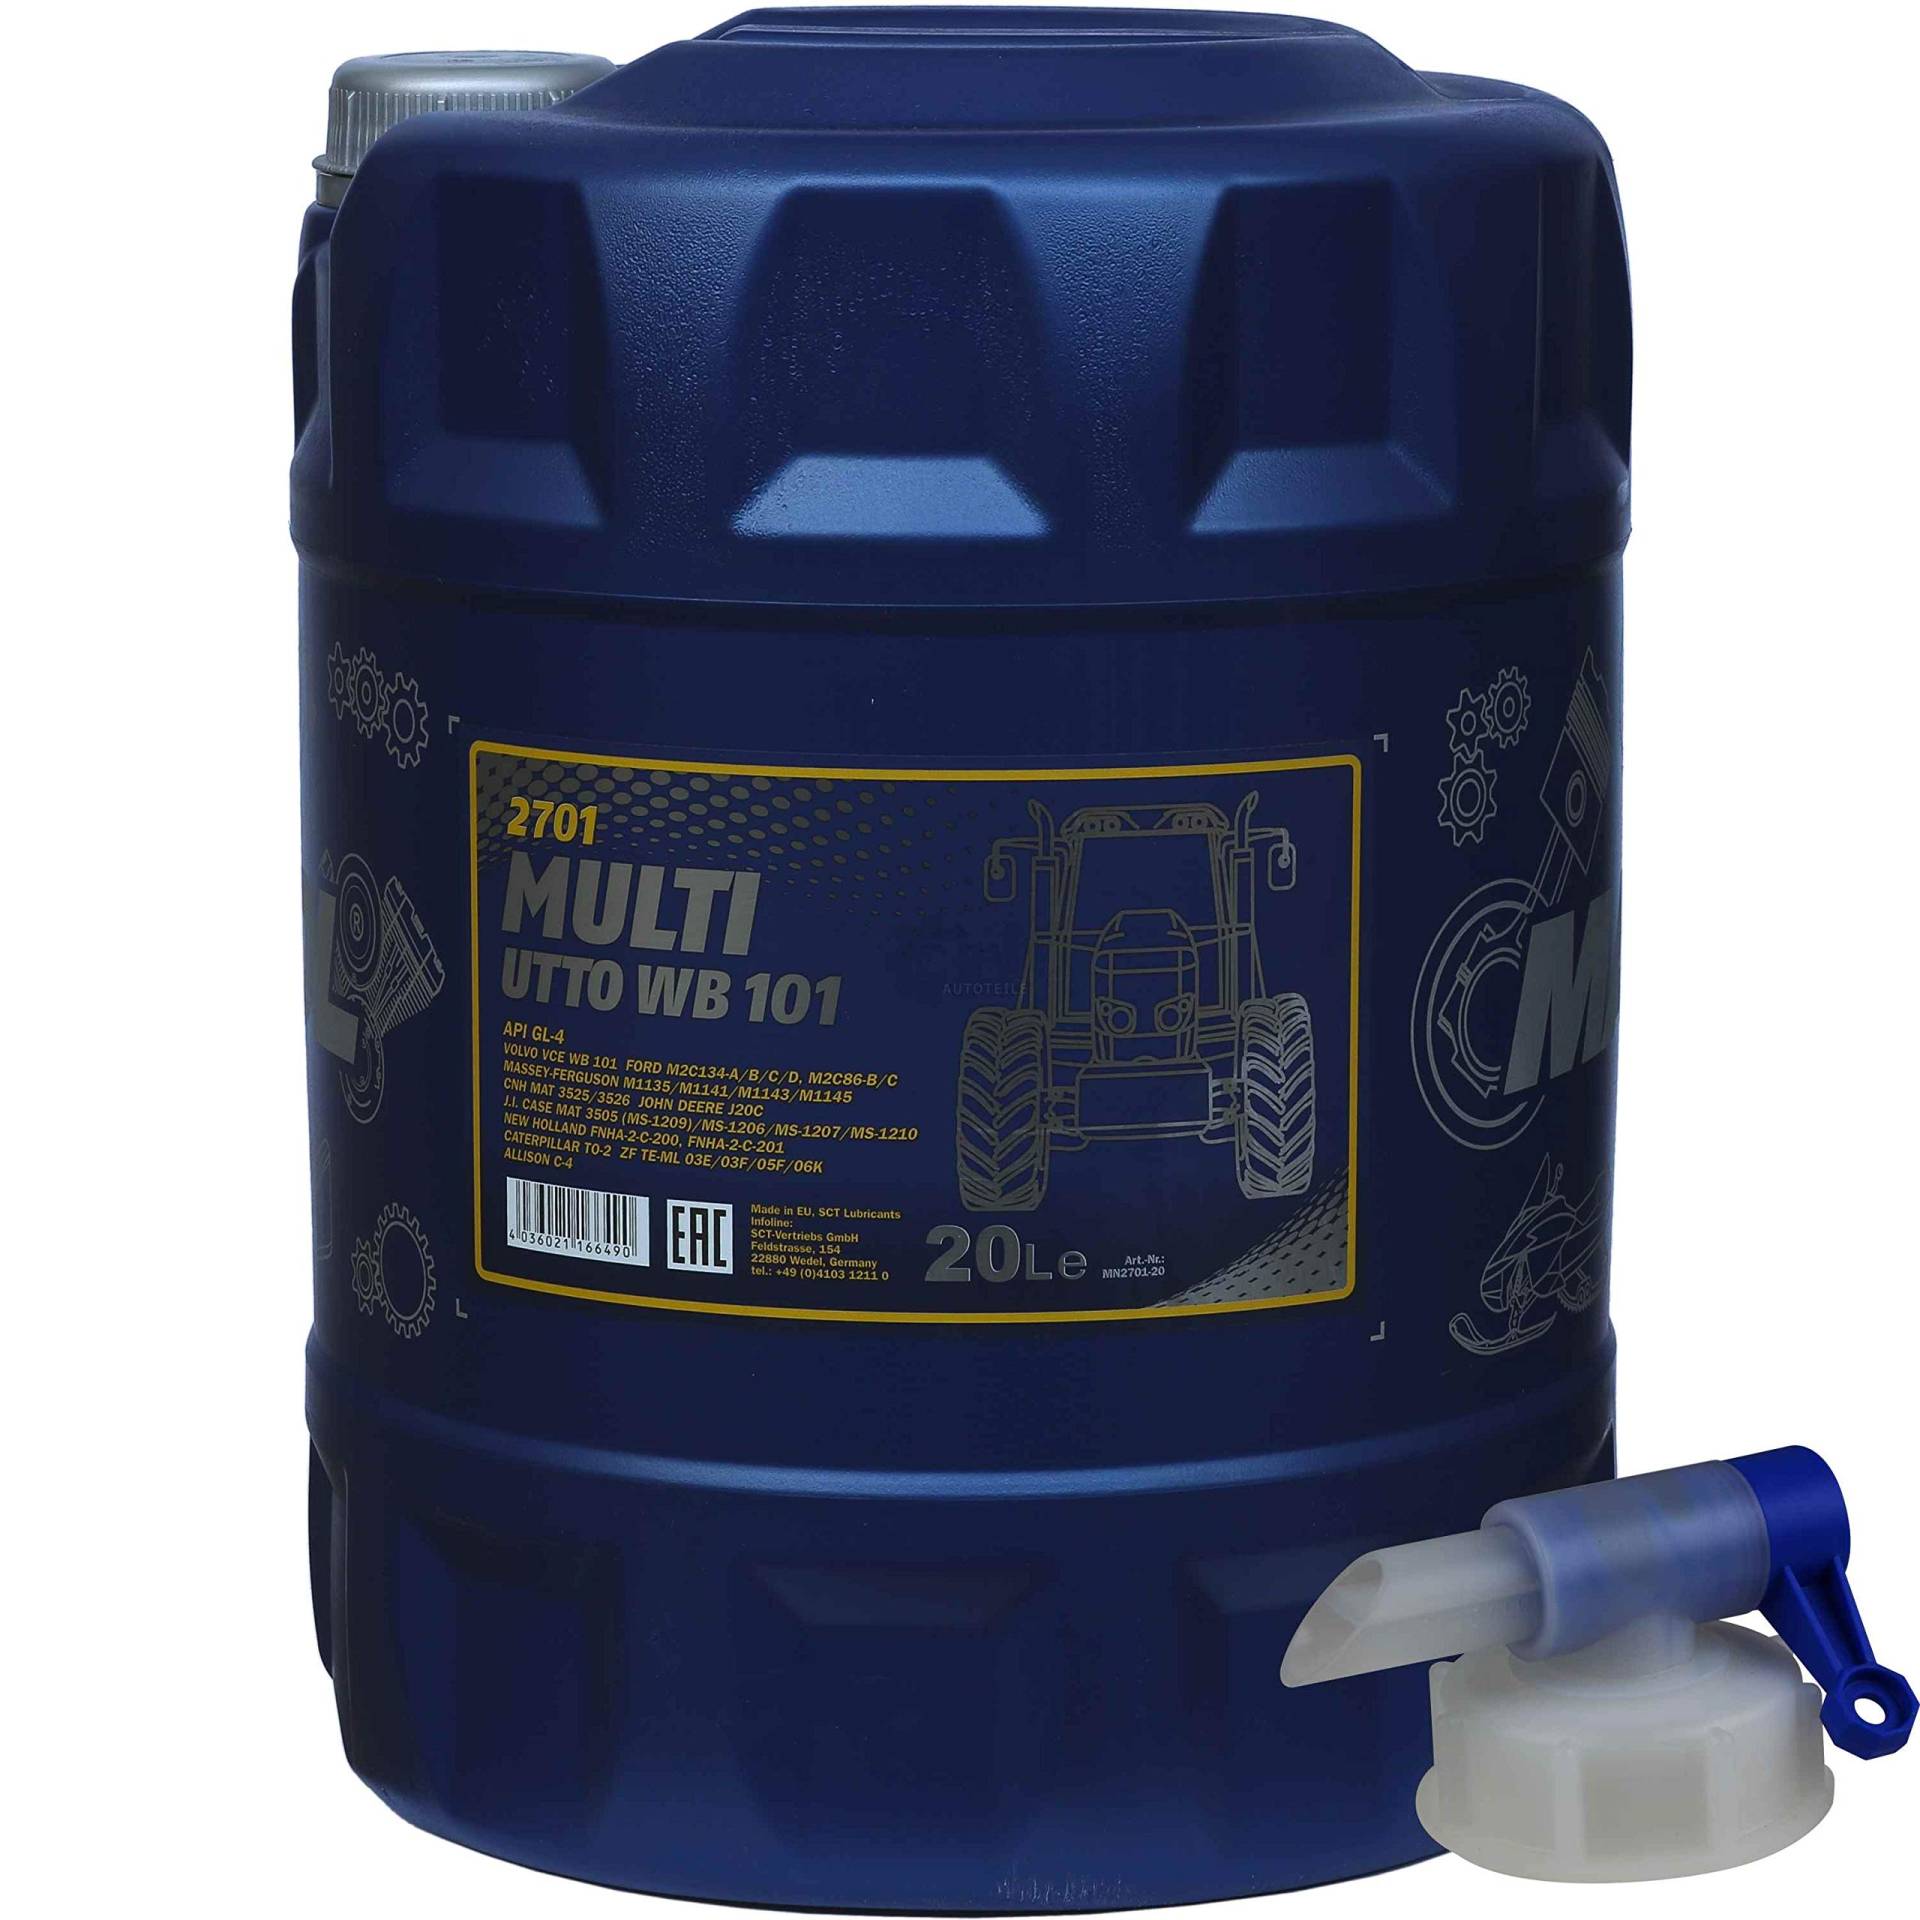 20 Liter MANNOL Multi UTTO WB 101 API GL-4 Landmaschinenöl + Auslaufhahn von Diederichs